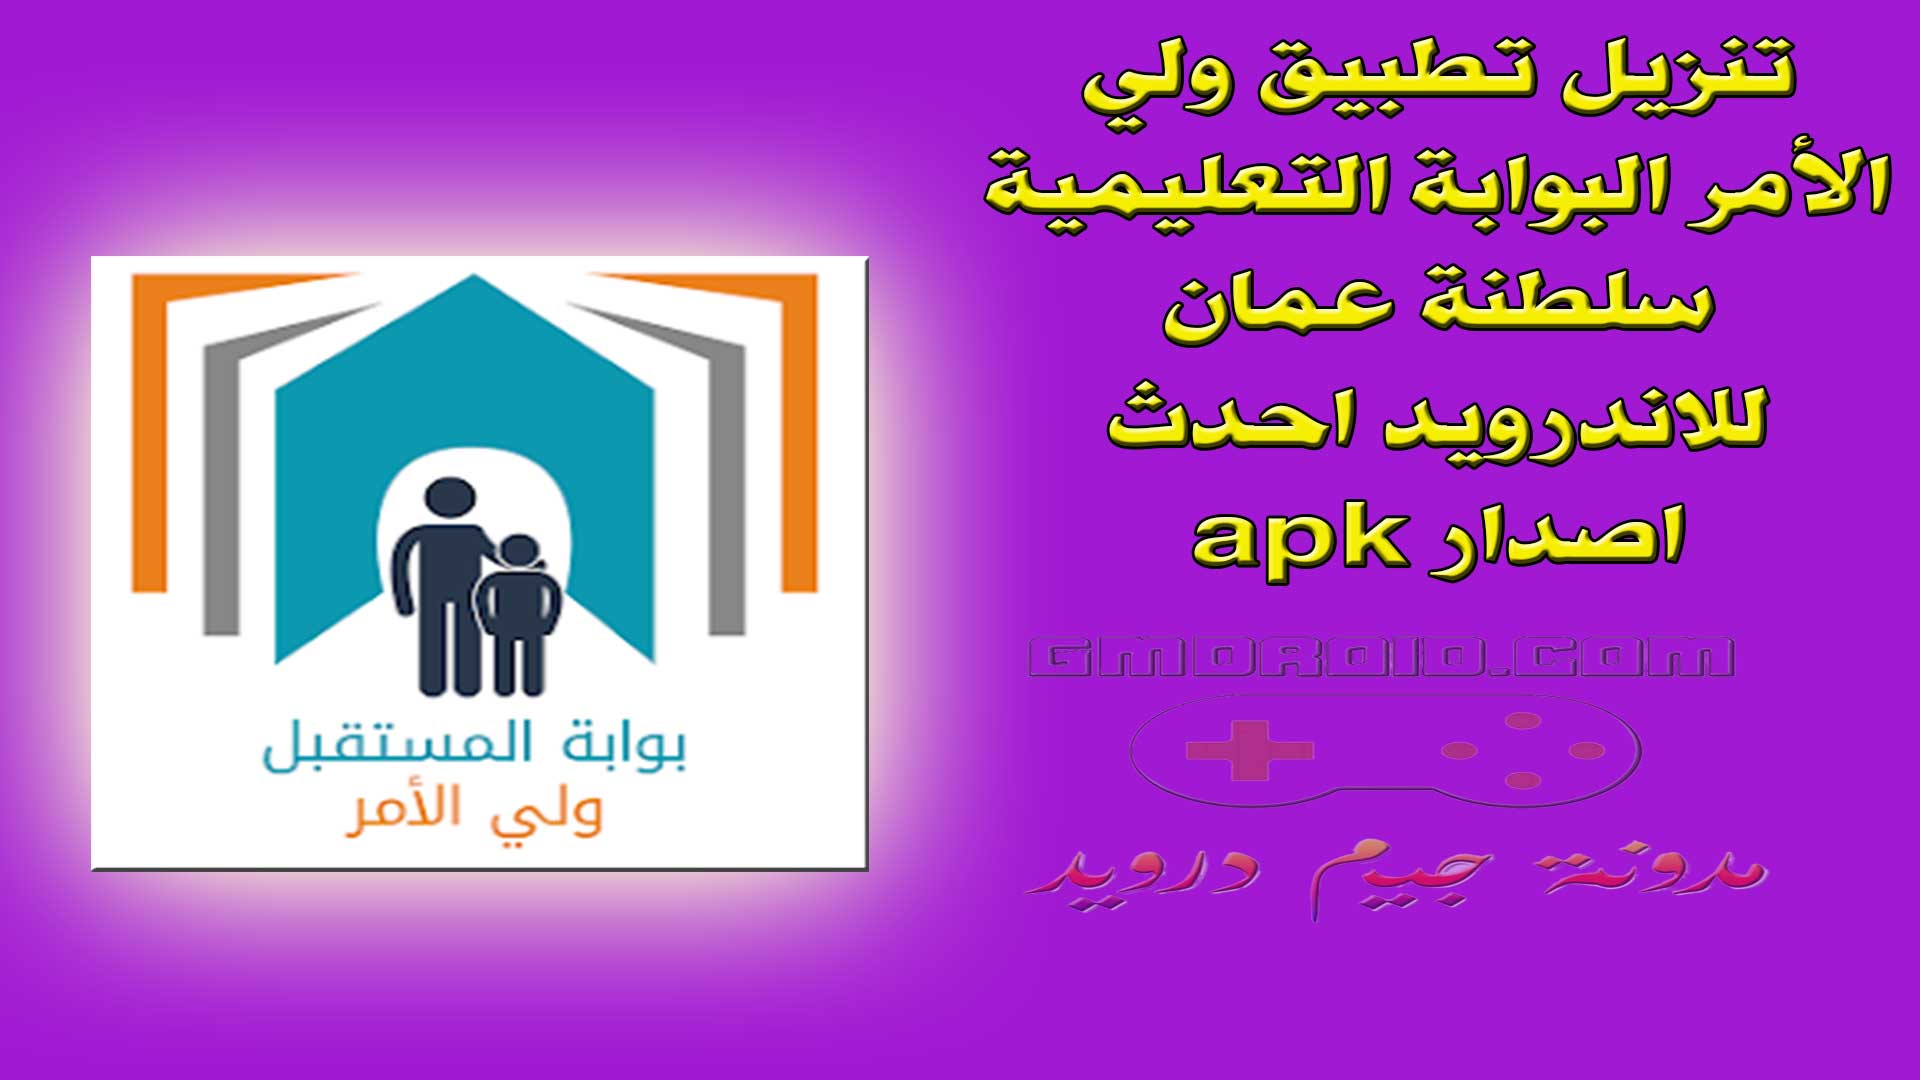 تنزيل تطبيق ولي الأمر البوابة التعليمية سلطنة عمان للاندرويد احدث اصدار apk